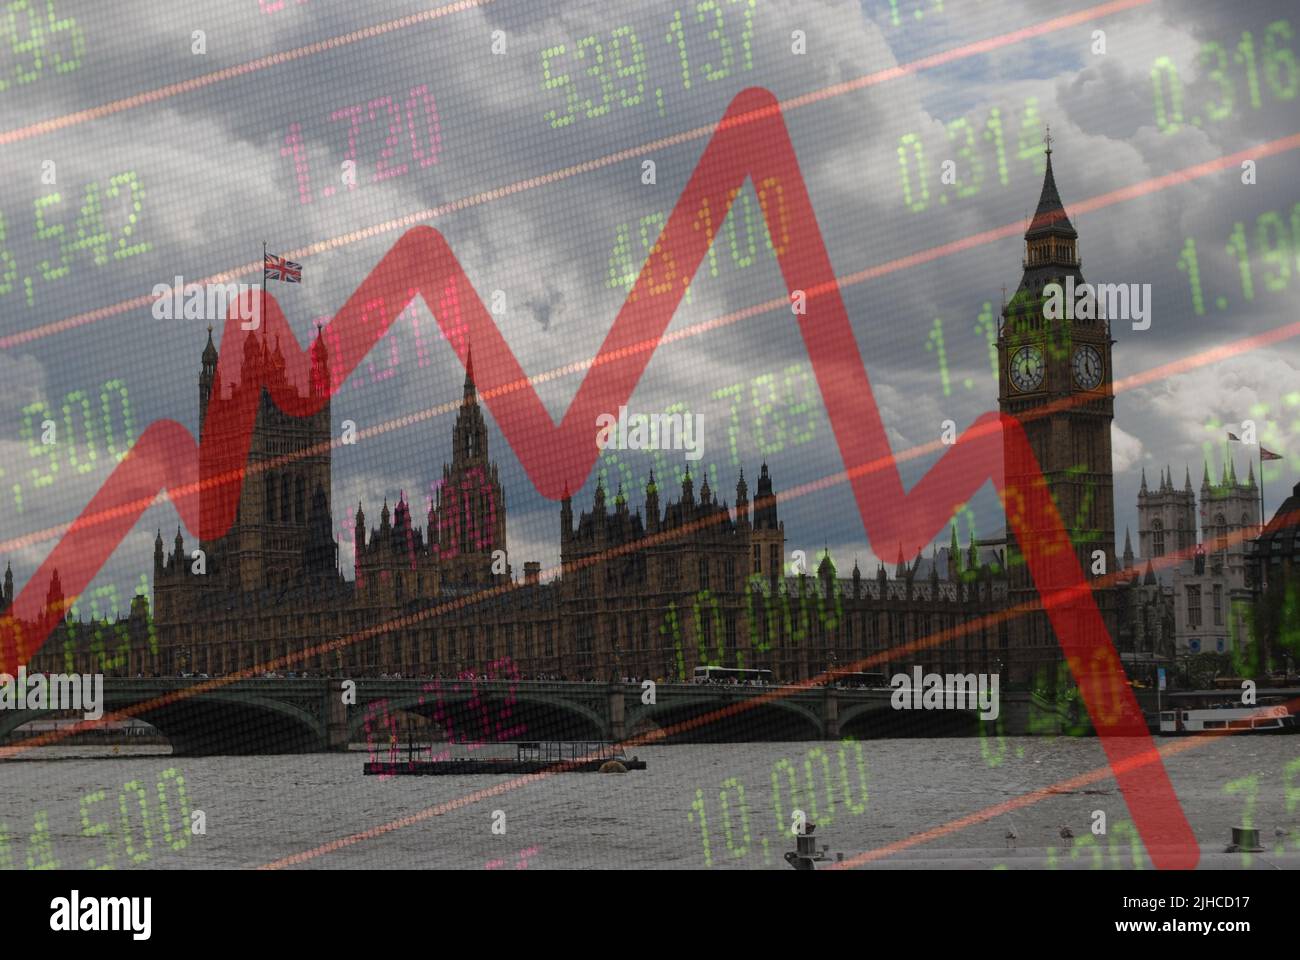 Compuesto digital de las Casas del Parlamento de Londres y el gráfico del ticker del desplome del mercado de valores, indicando recesión económica Foto de stock